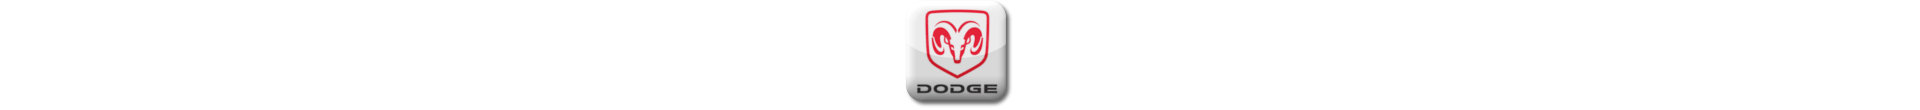 Boitier additionnel Dodge Diesel Evolussem